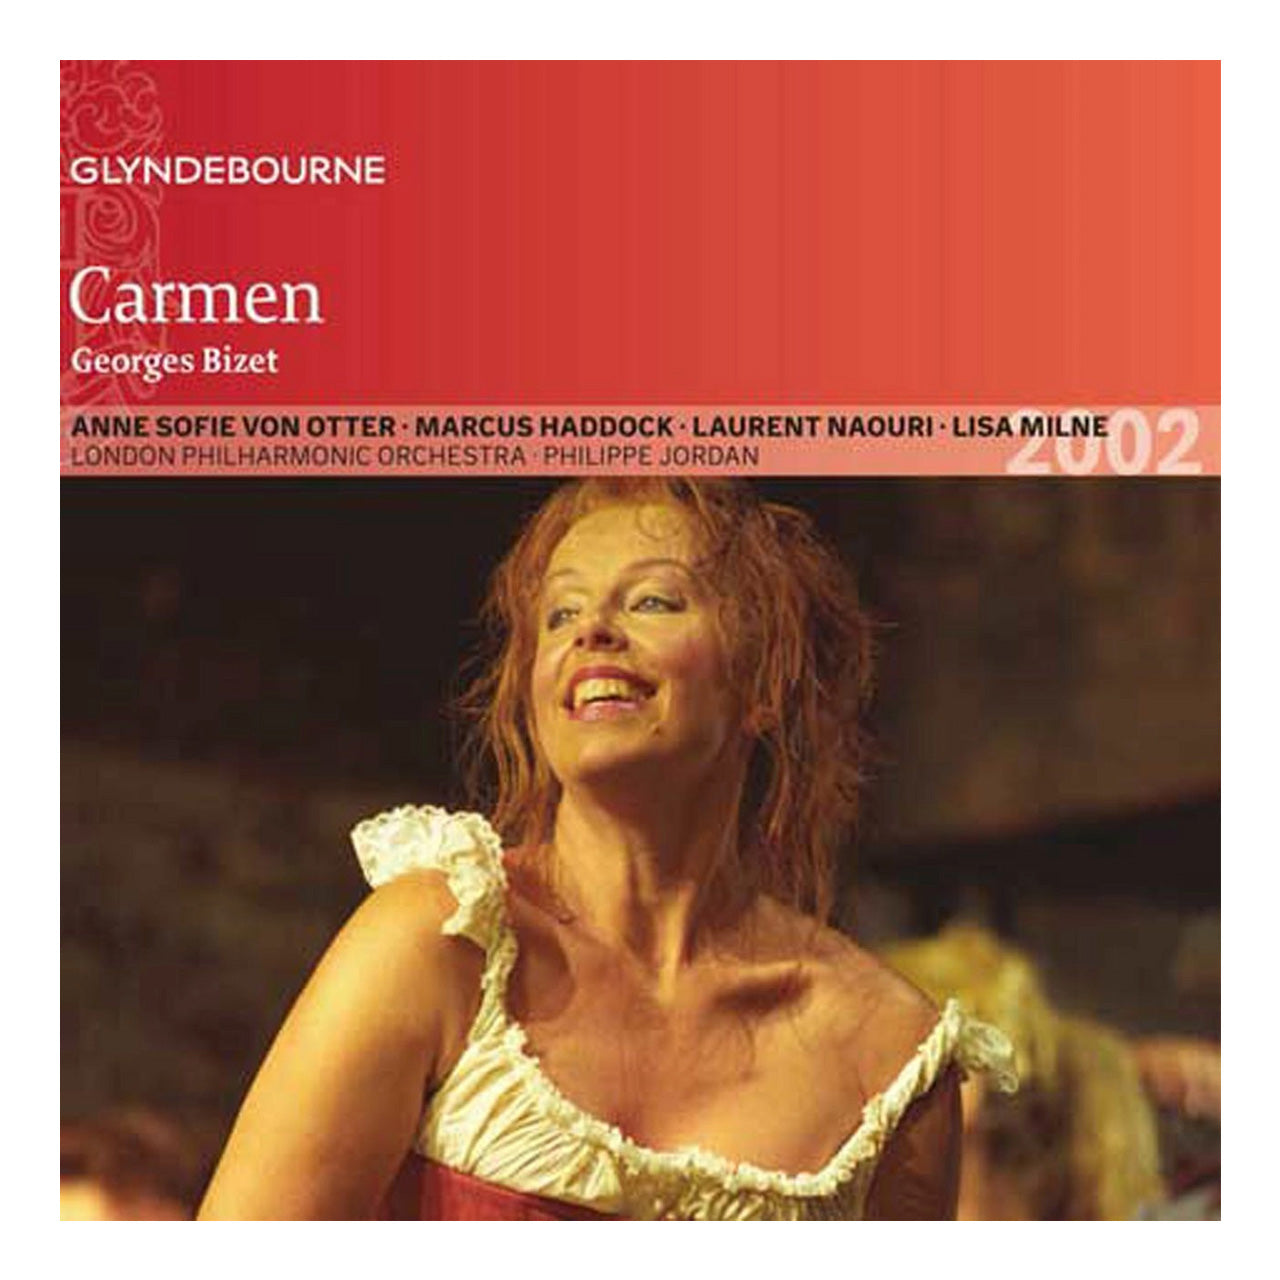 Carmen CD 2002 Glyndebourne Shop